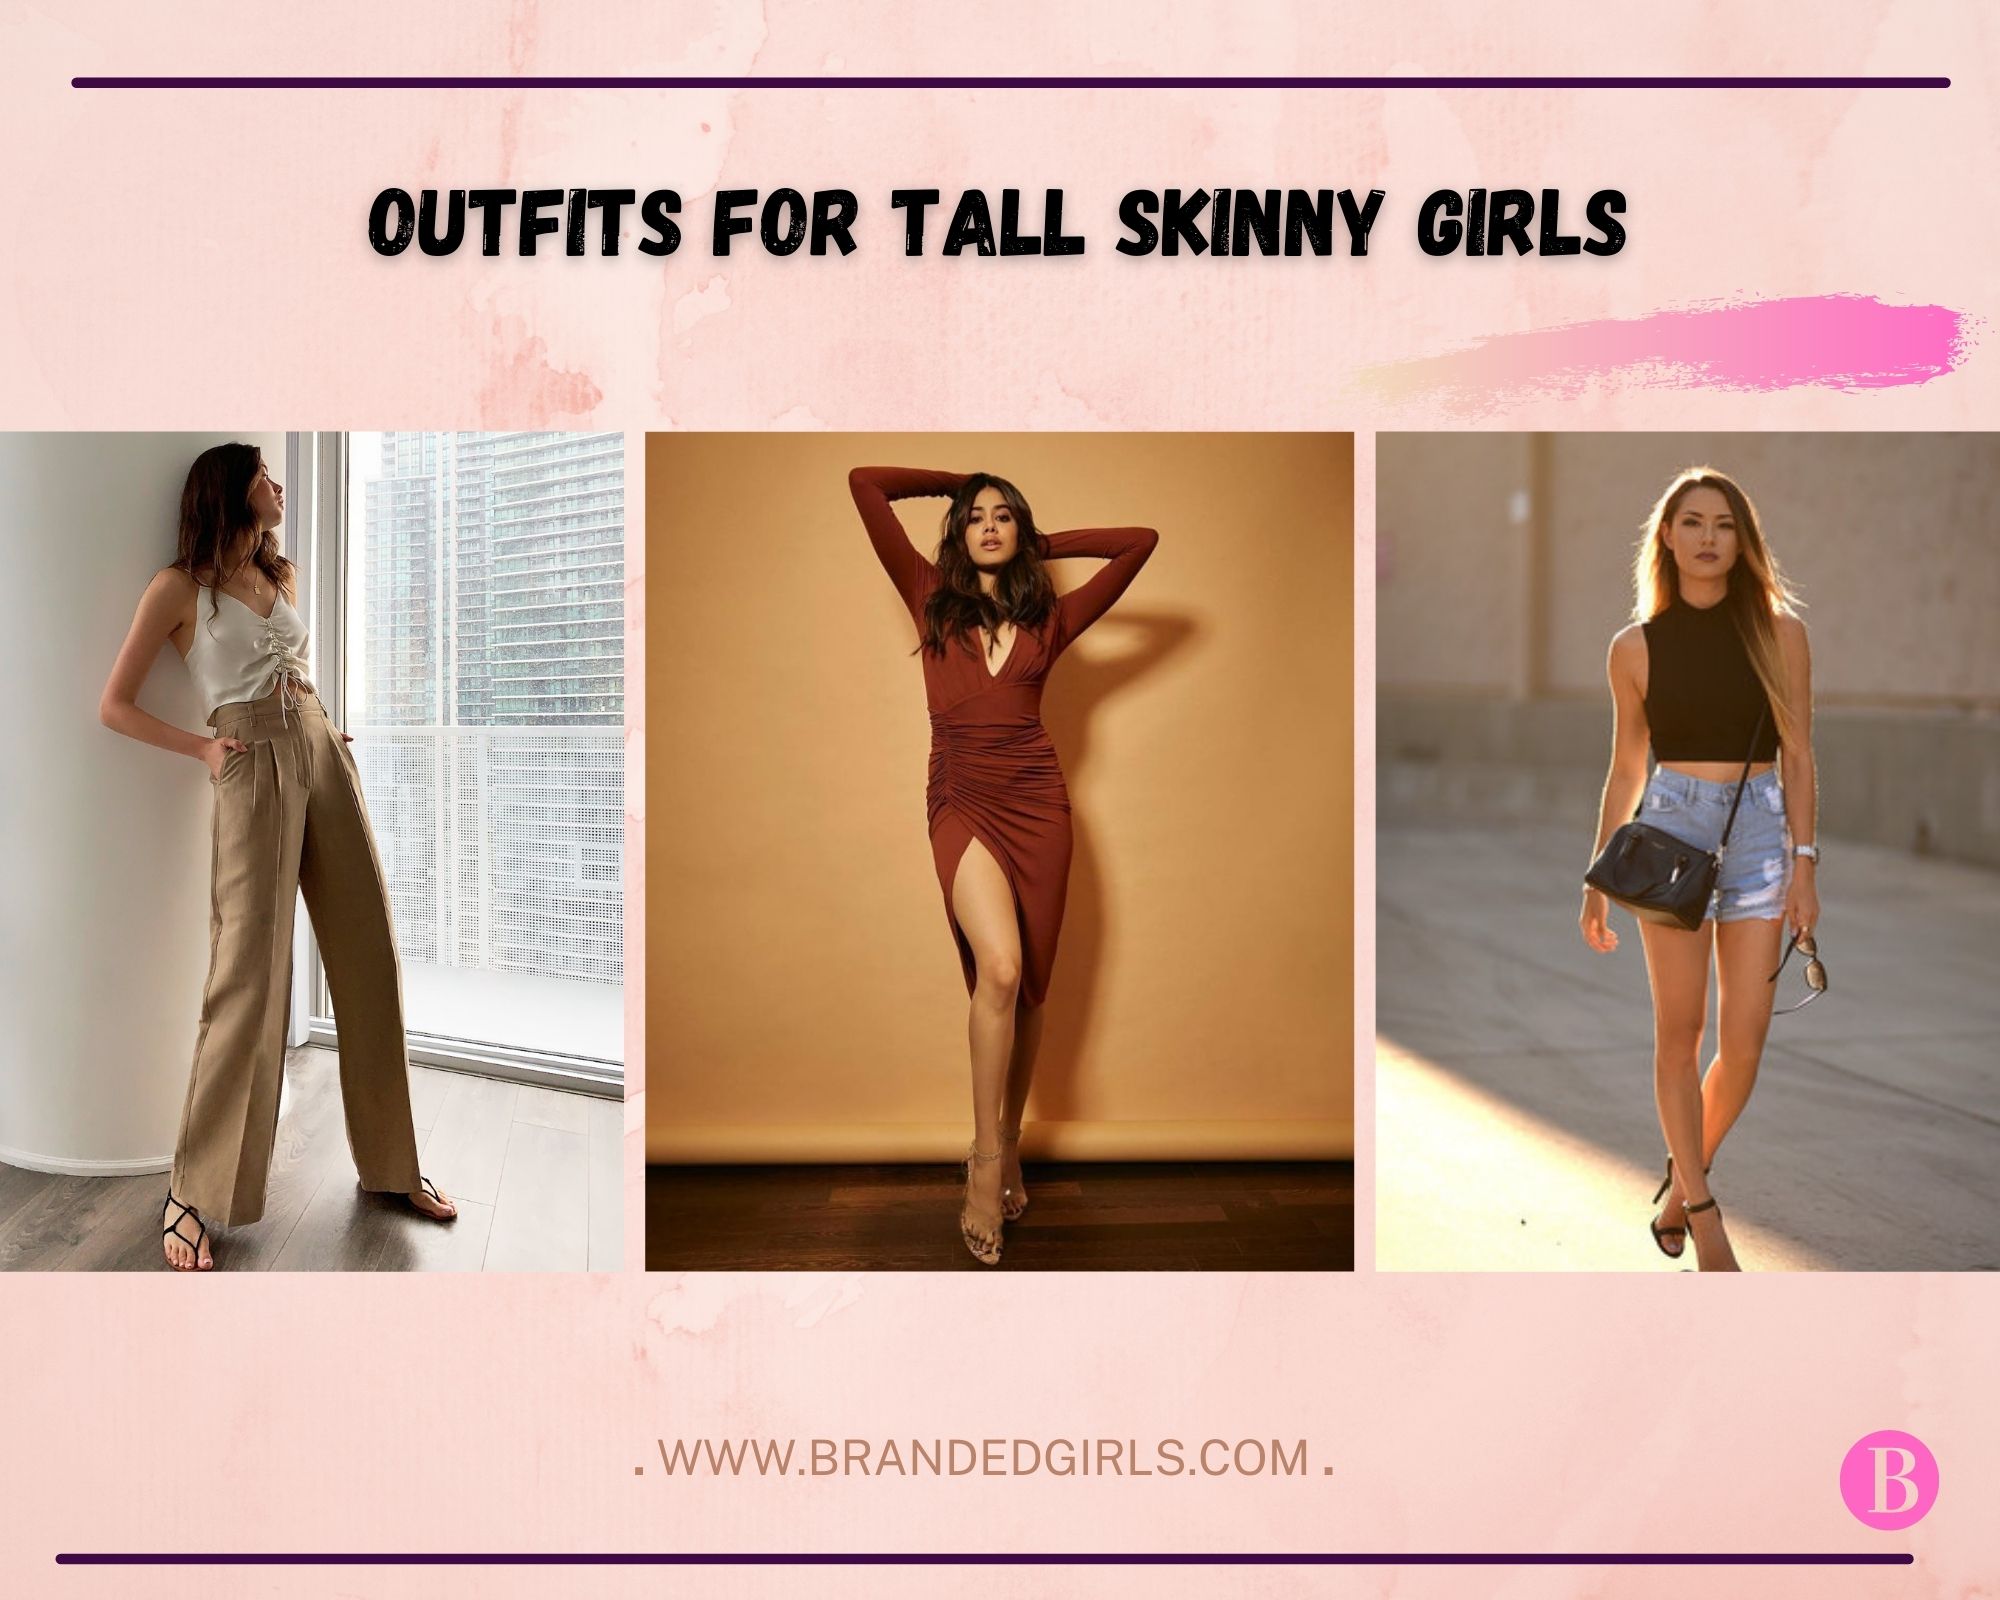 https://brandedgirls.b-cdn.net/wp-content/uploads/2021/07/outfits-for-tall-skinny-girlsd.jpg